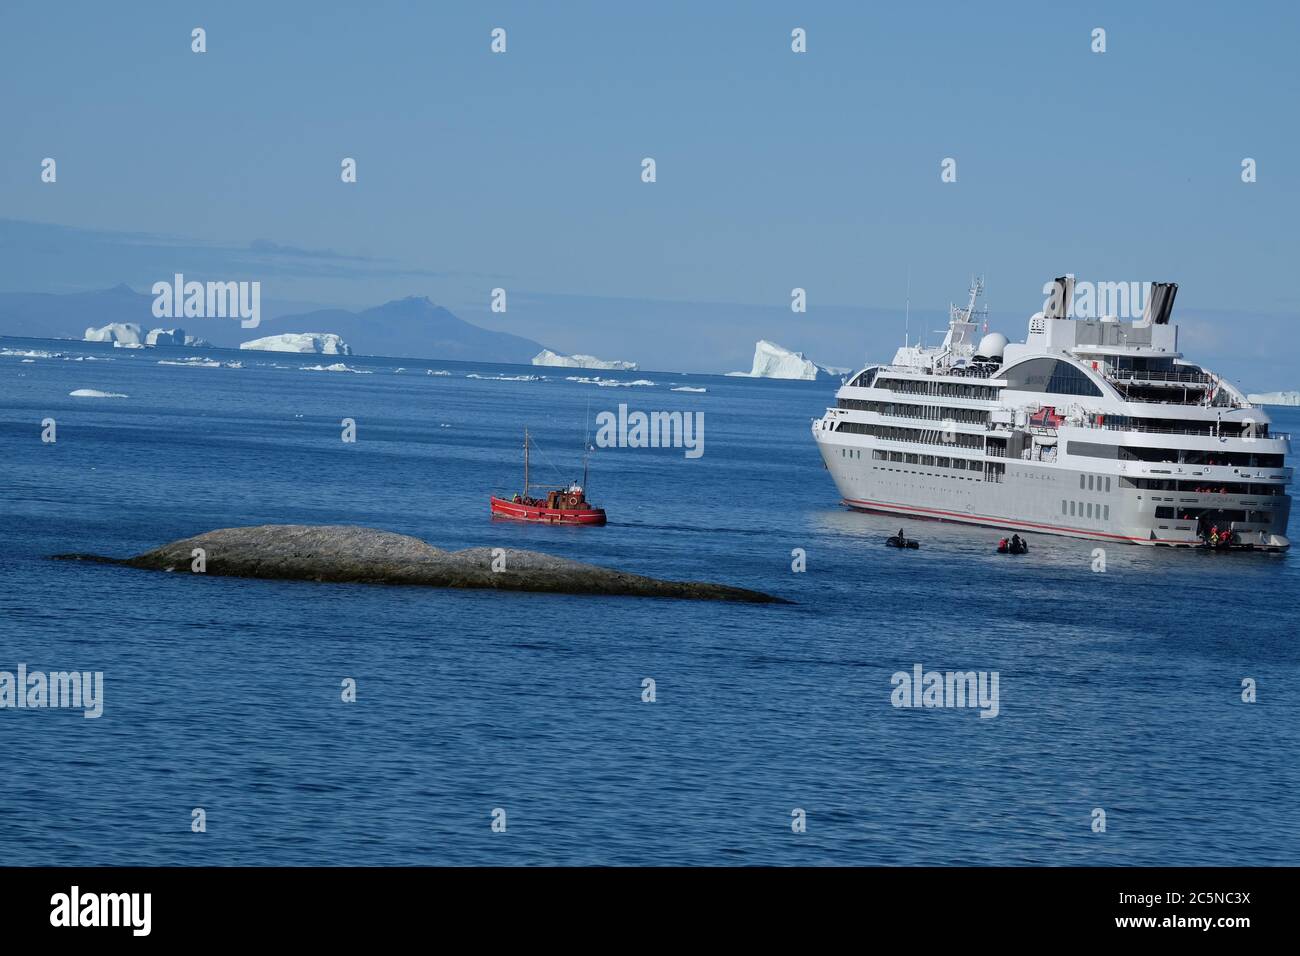 Un petit chalutier de pêche rouge se tient à bord des passagers depuis un paquebot de croisière pour leur mémorable voile autour des icebergs géants. Banque D'Images